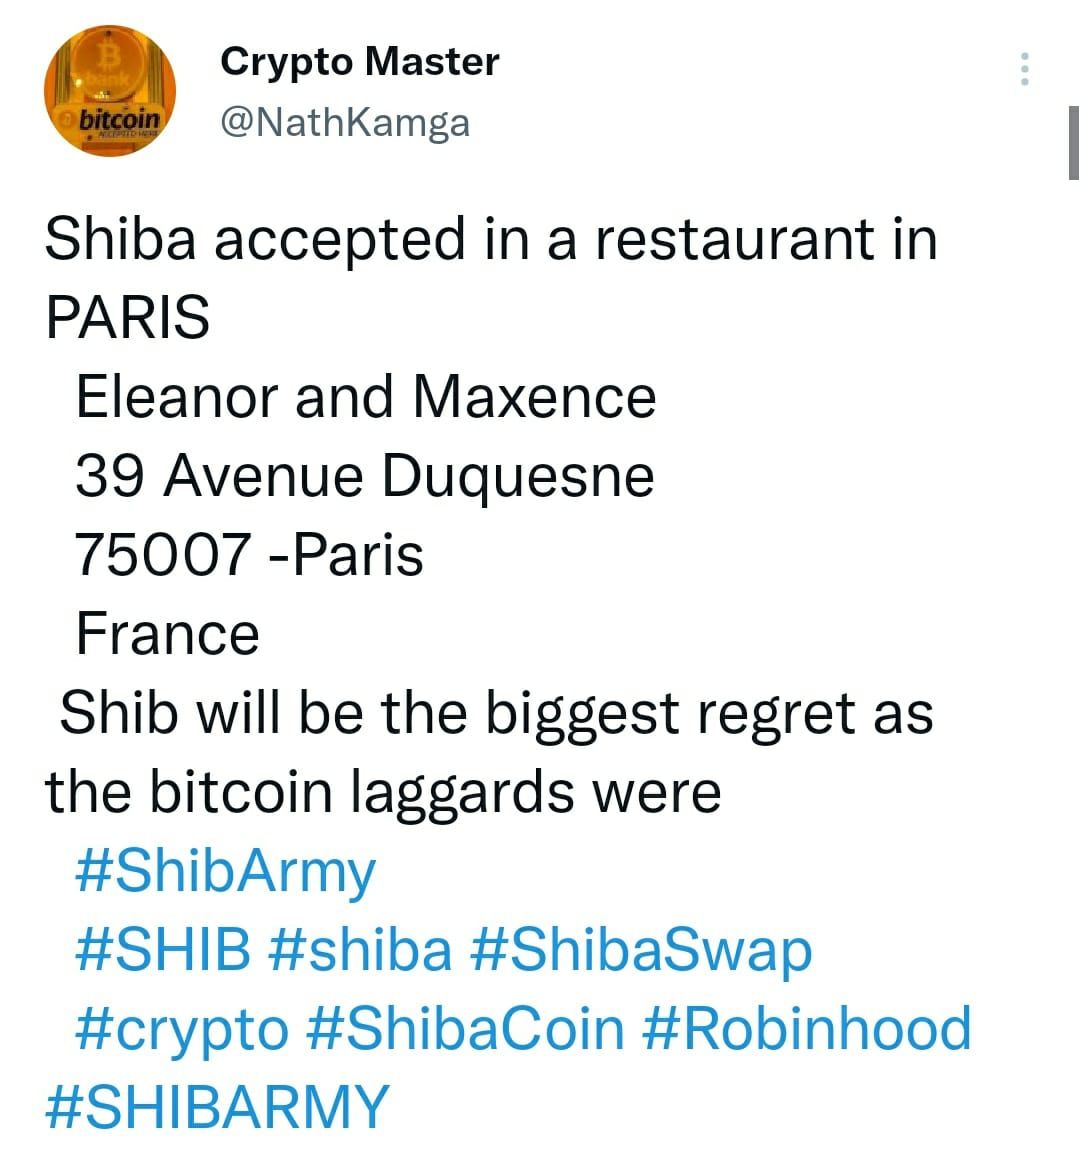 Postingan penggemar kripto terkait metode pembayaran dengan Shiba Inu.